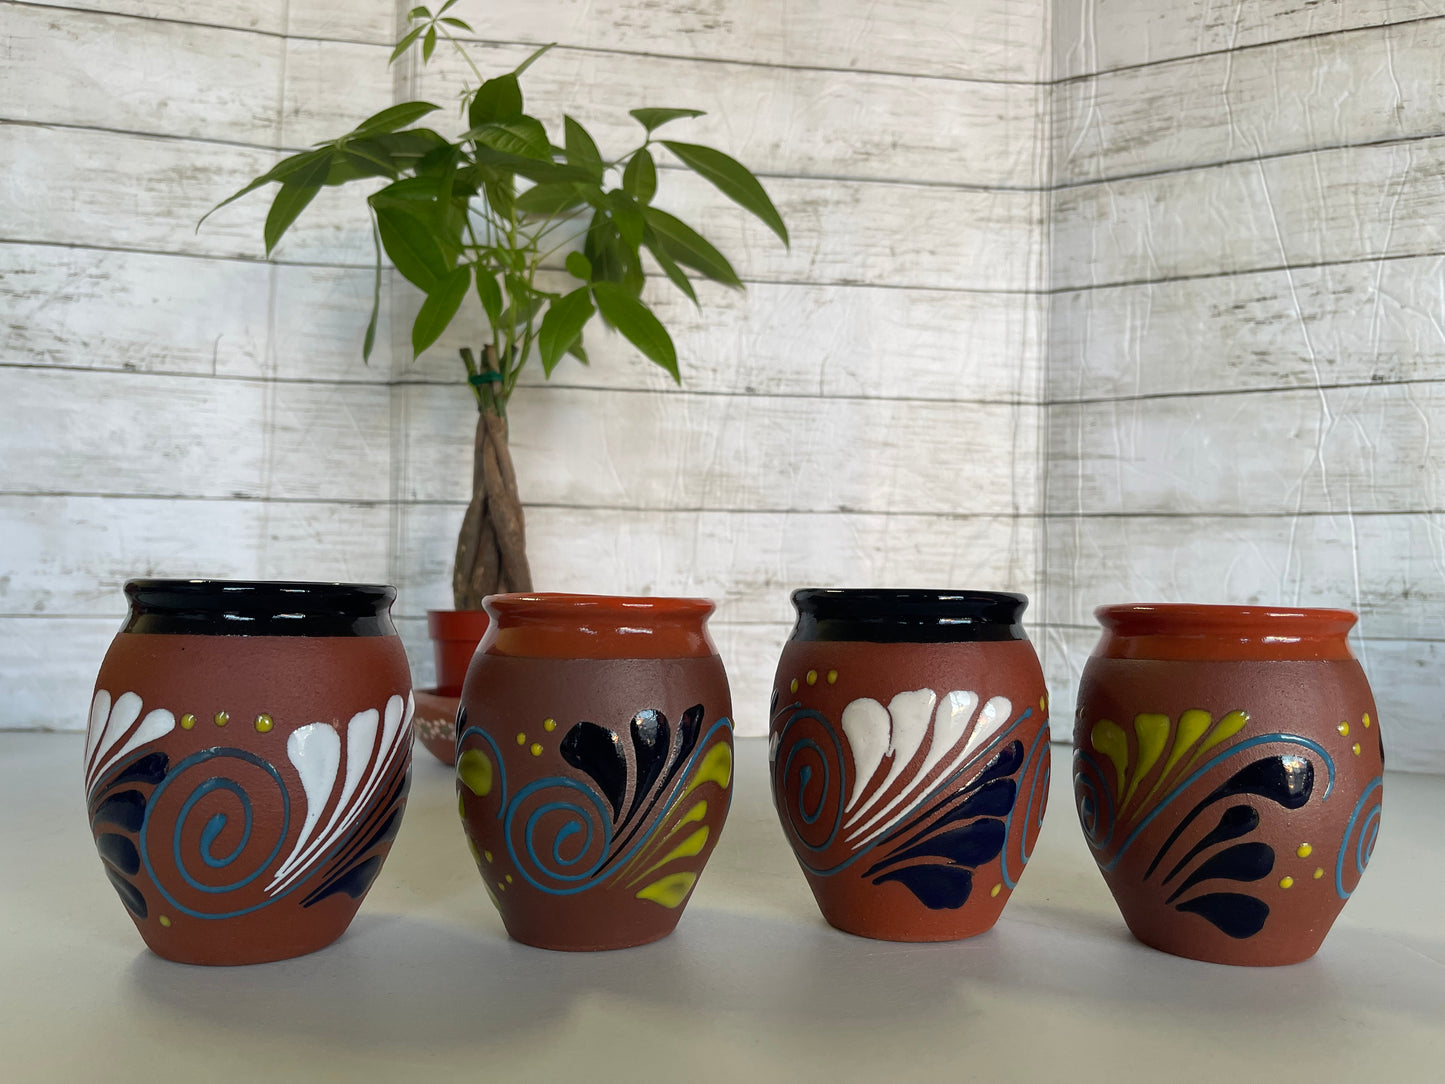 Cantarito de barro decorado/red clay cantarito hand designed/mexico clay cantarito cup